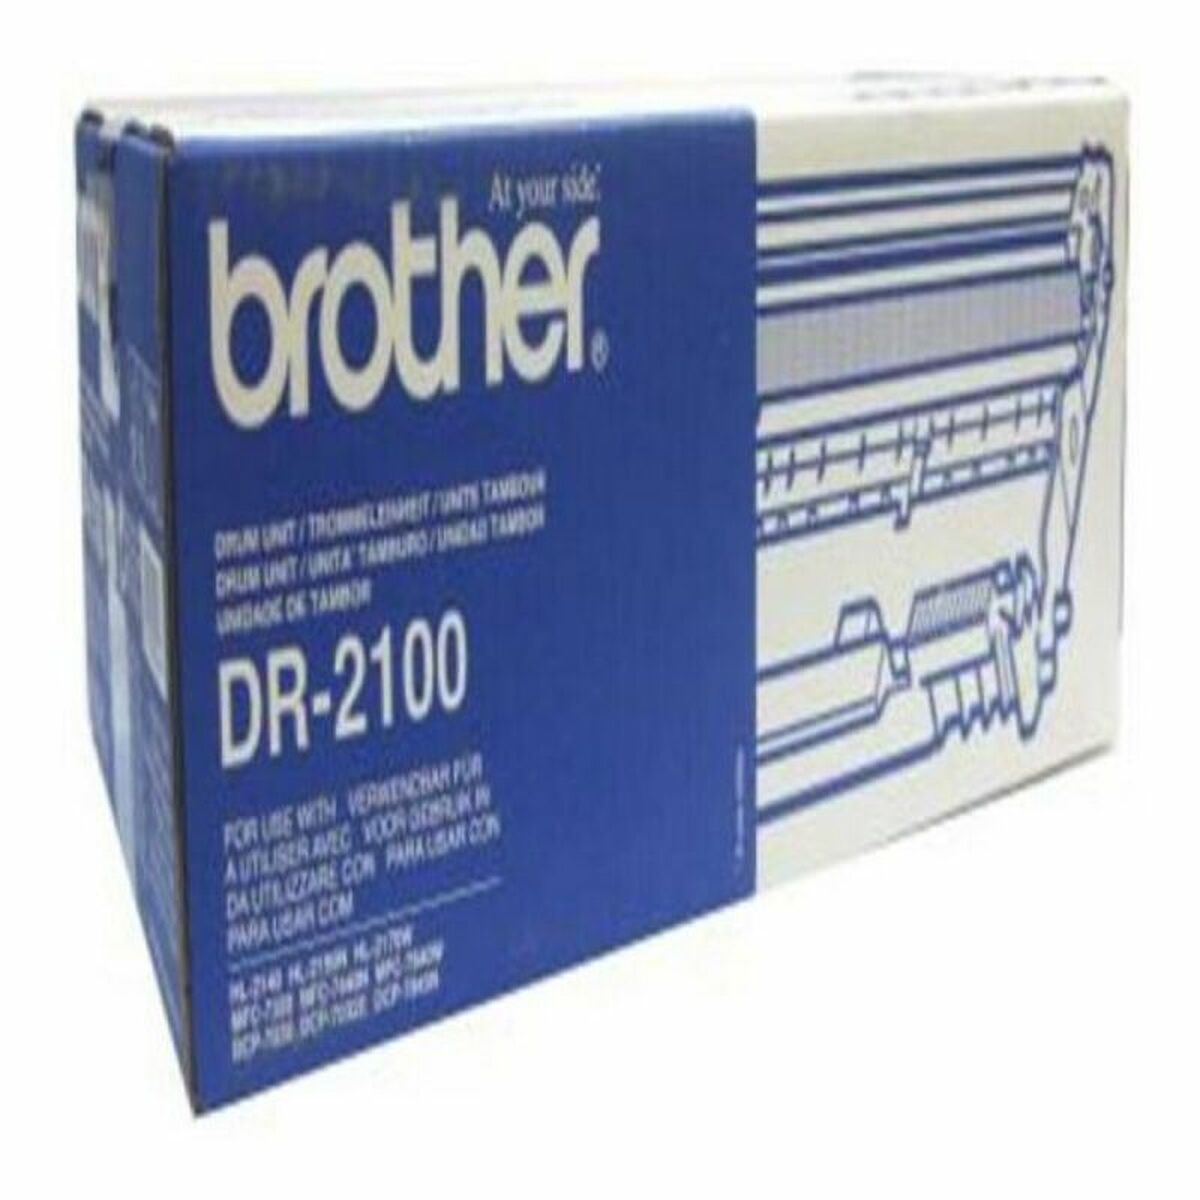 BROTHER DR-2100 Trommel (DR-2100) schwarz